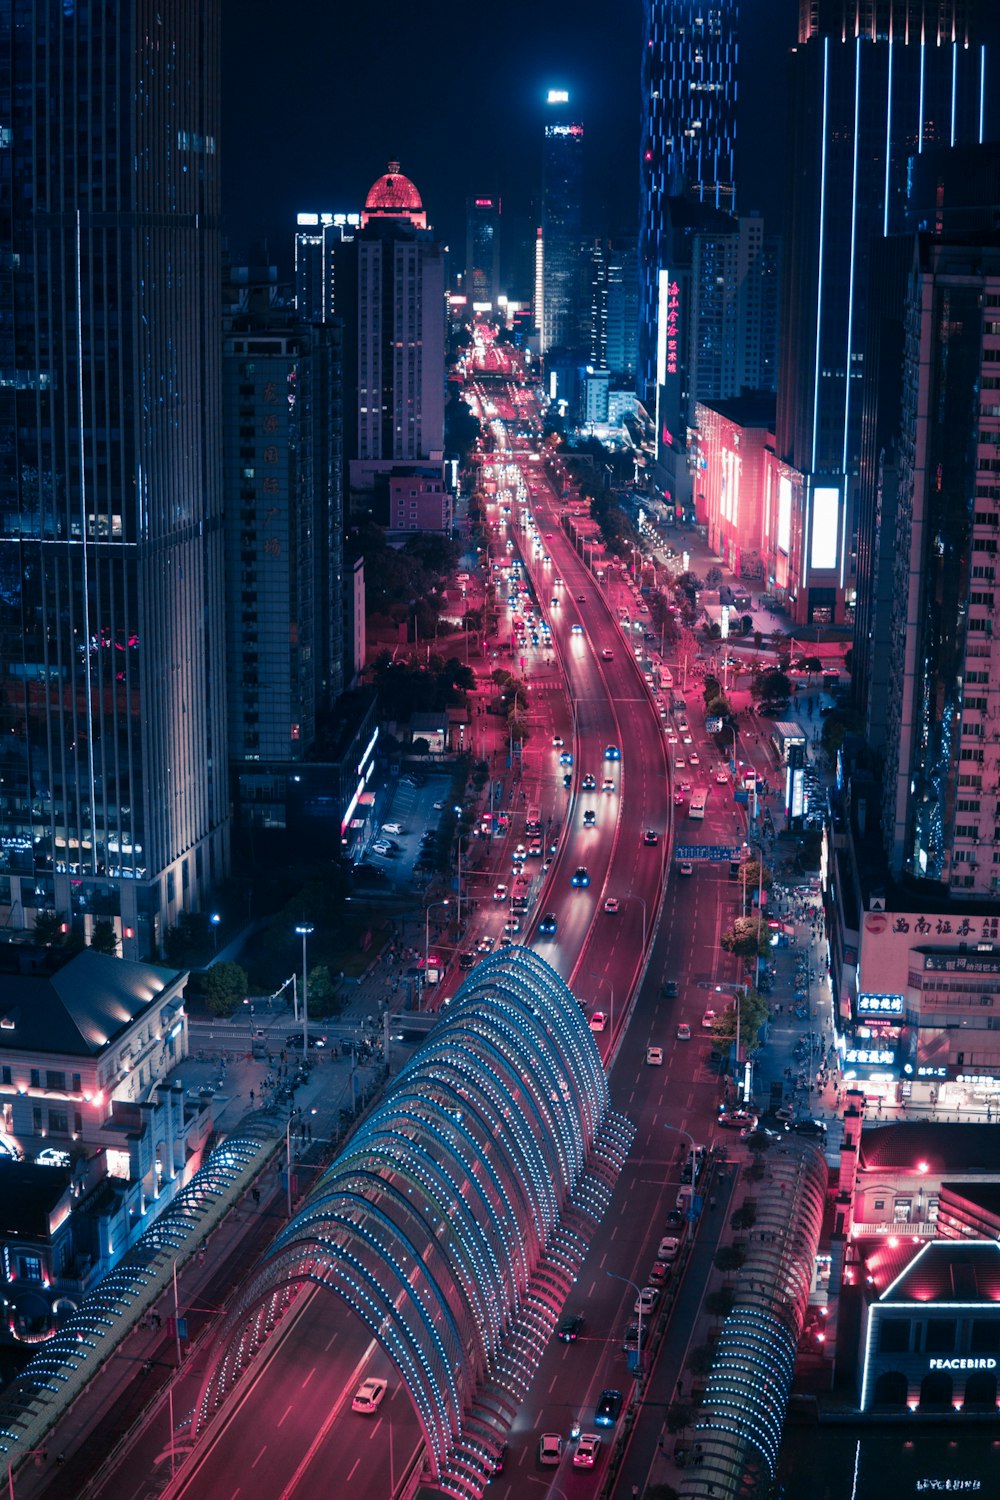 Zeitrafferaufnahme eines Fahrzeugs, das nachts in der Nähe der Straße zwischen Hochhäusern fährt